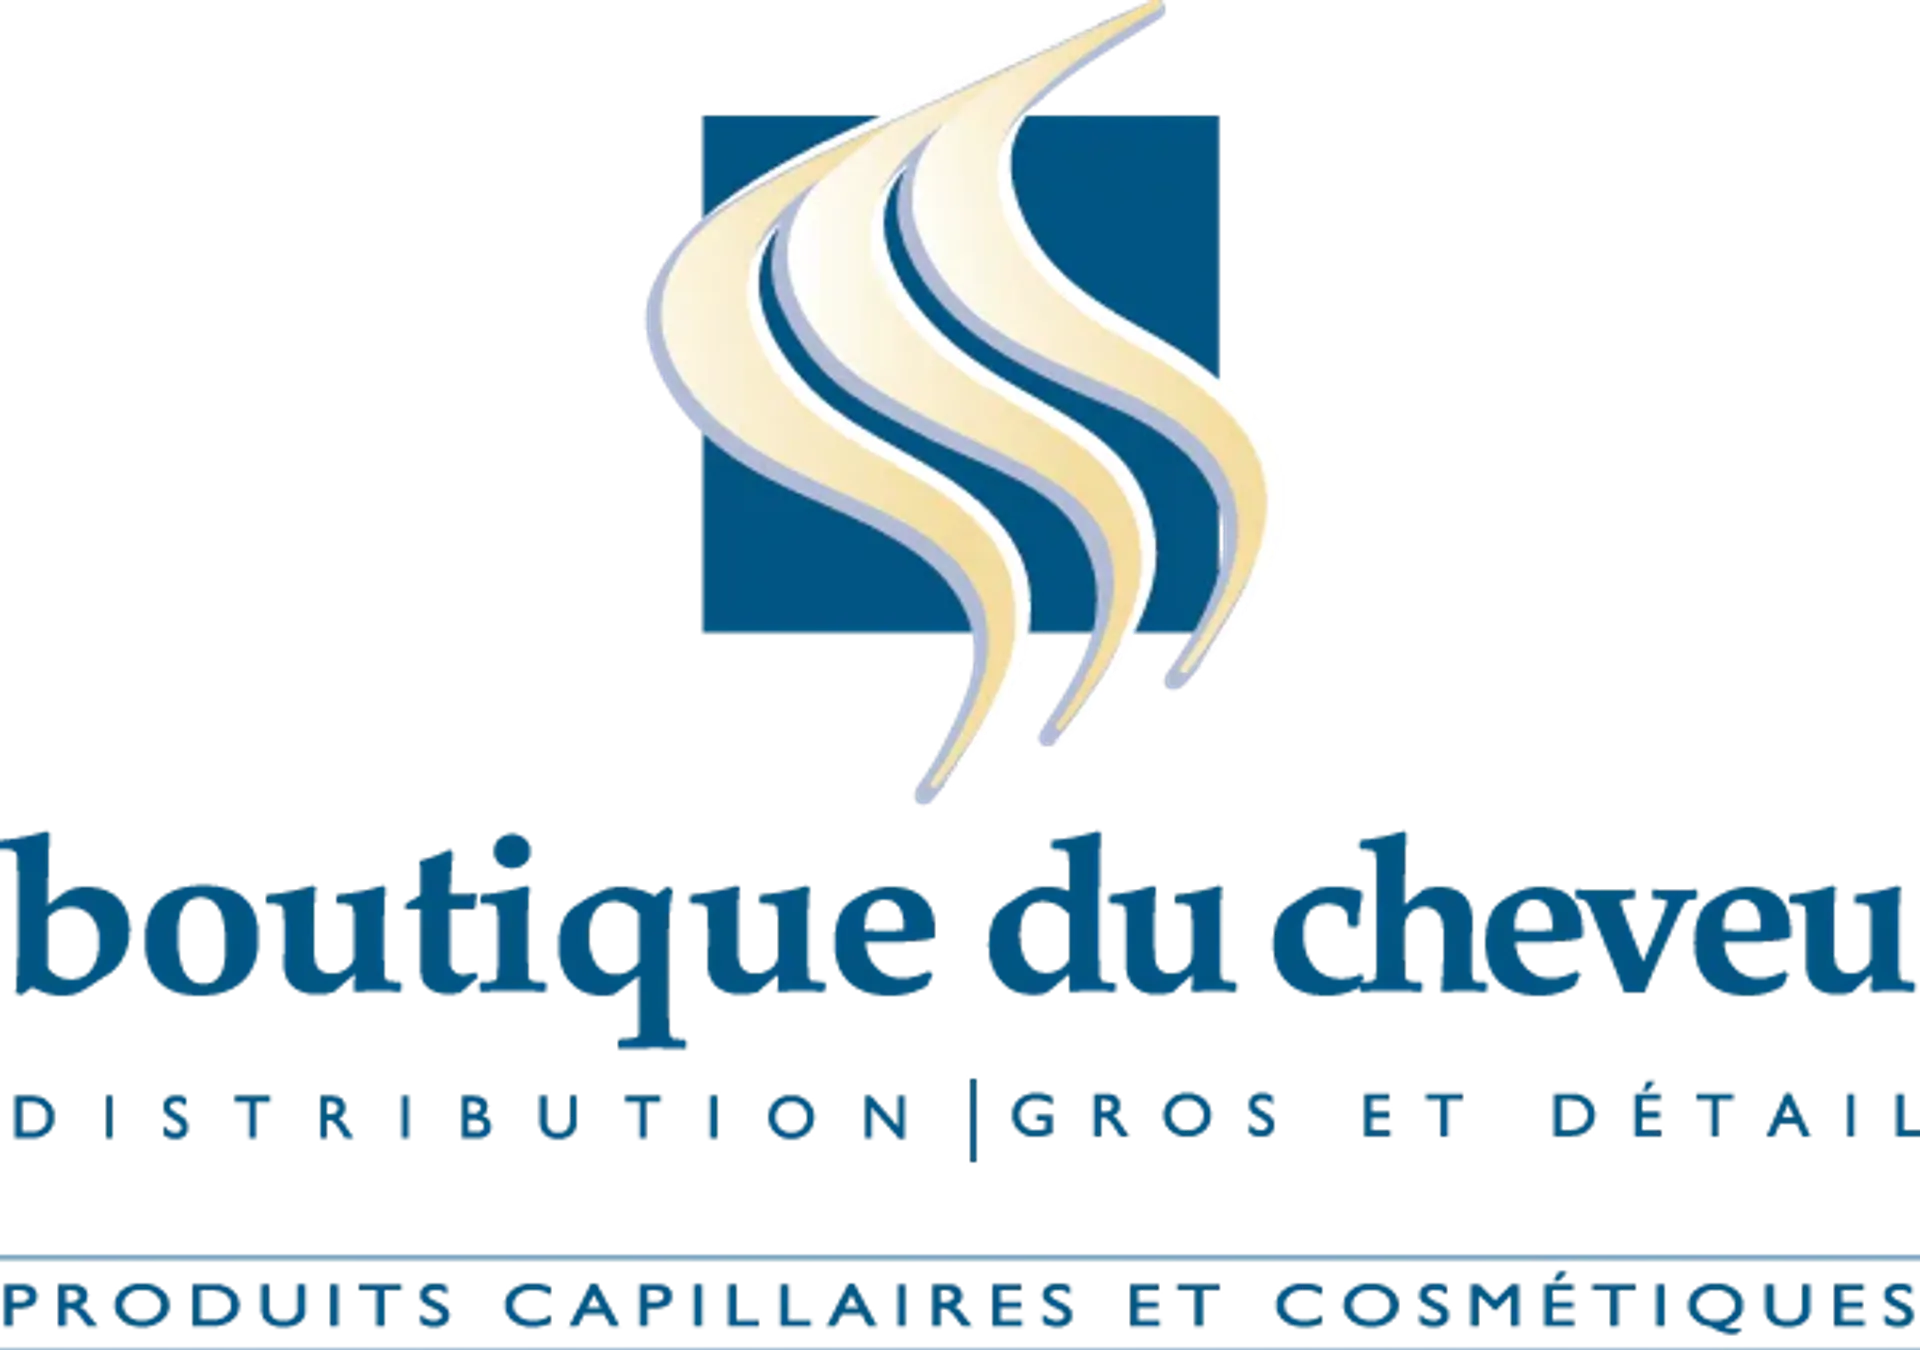 BOUTIQUE DU CHEVEUX logo de circulaires